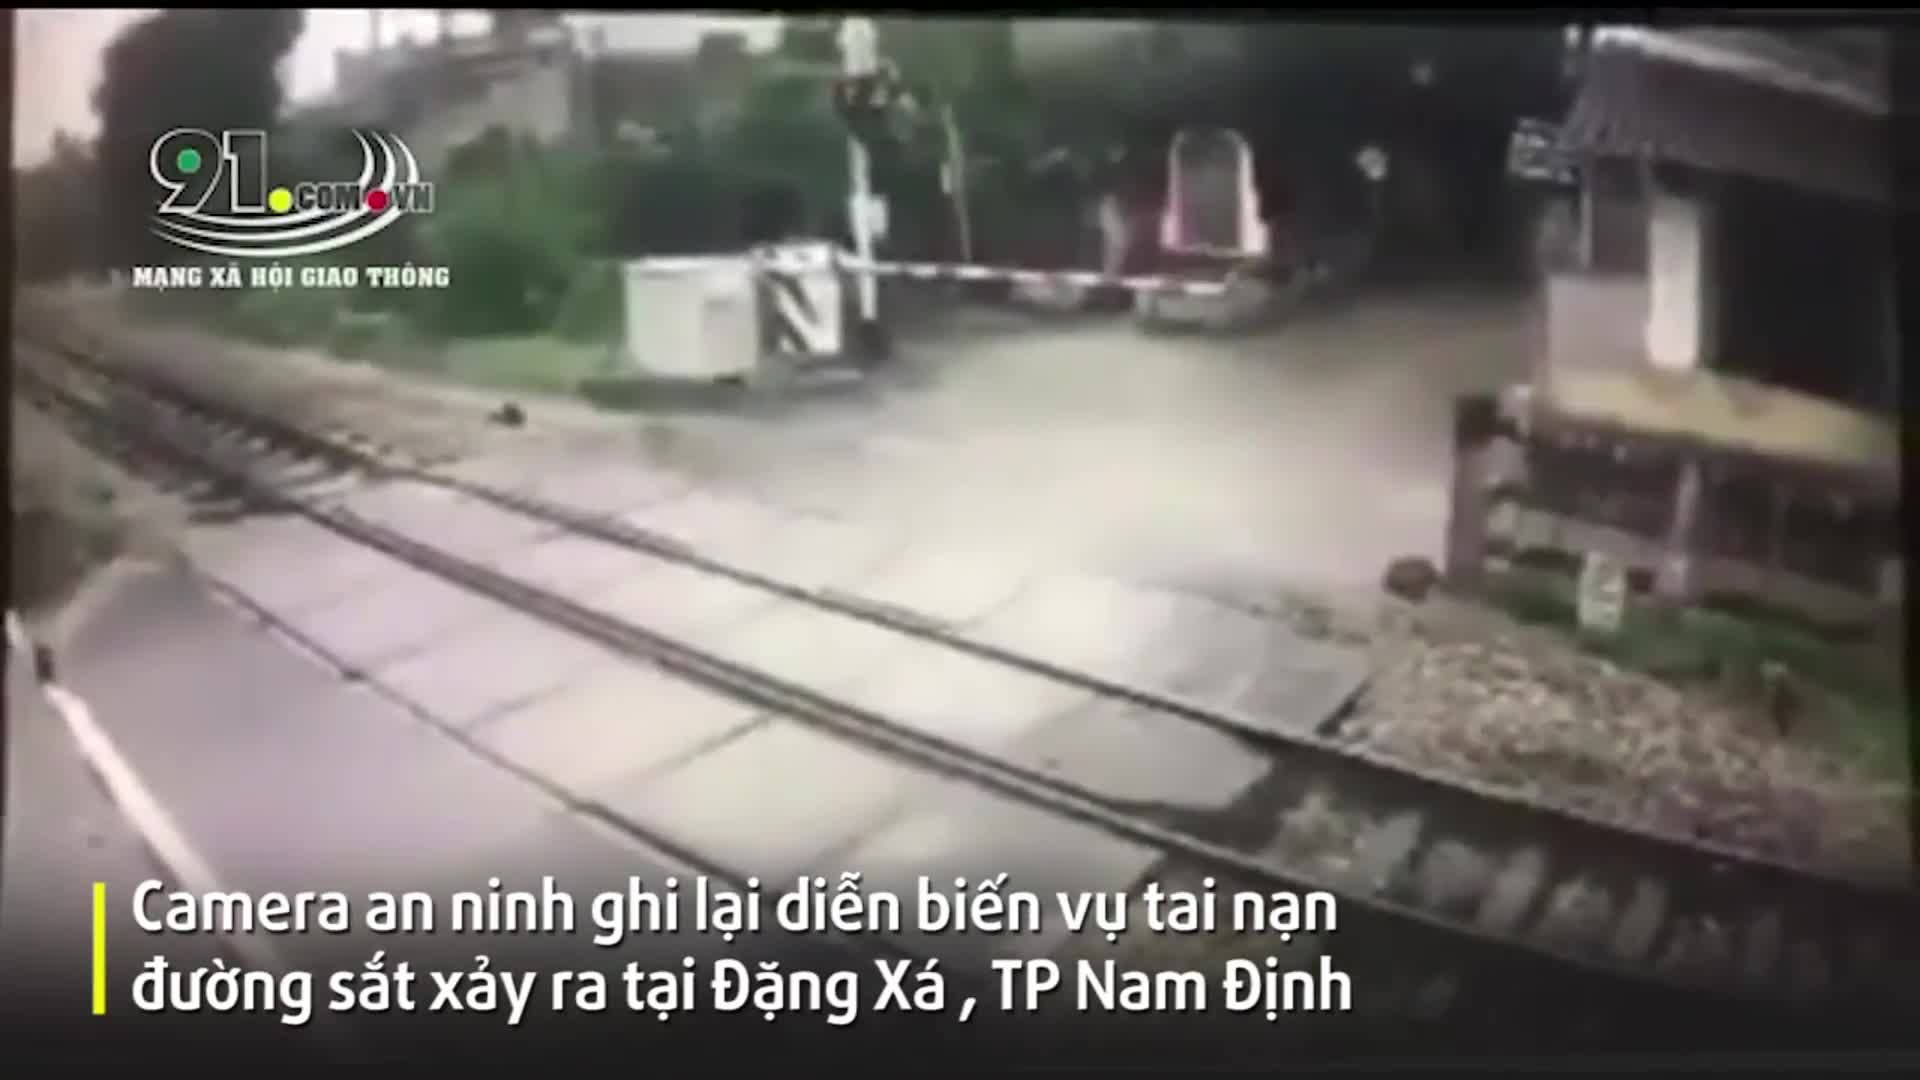 Khoảnh khắc thiếu nữ bị tàu hỏa đâm trúng khi vượt qua đường sắt